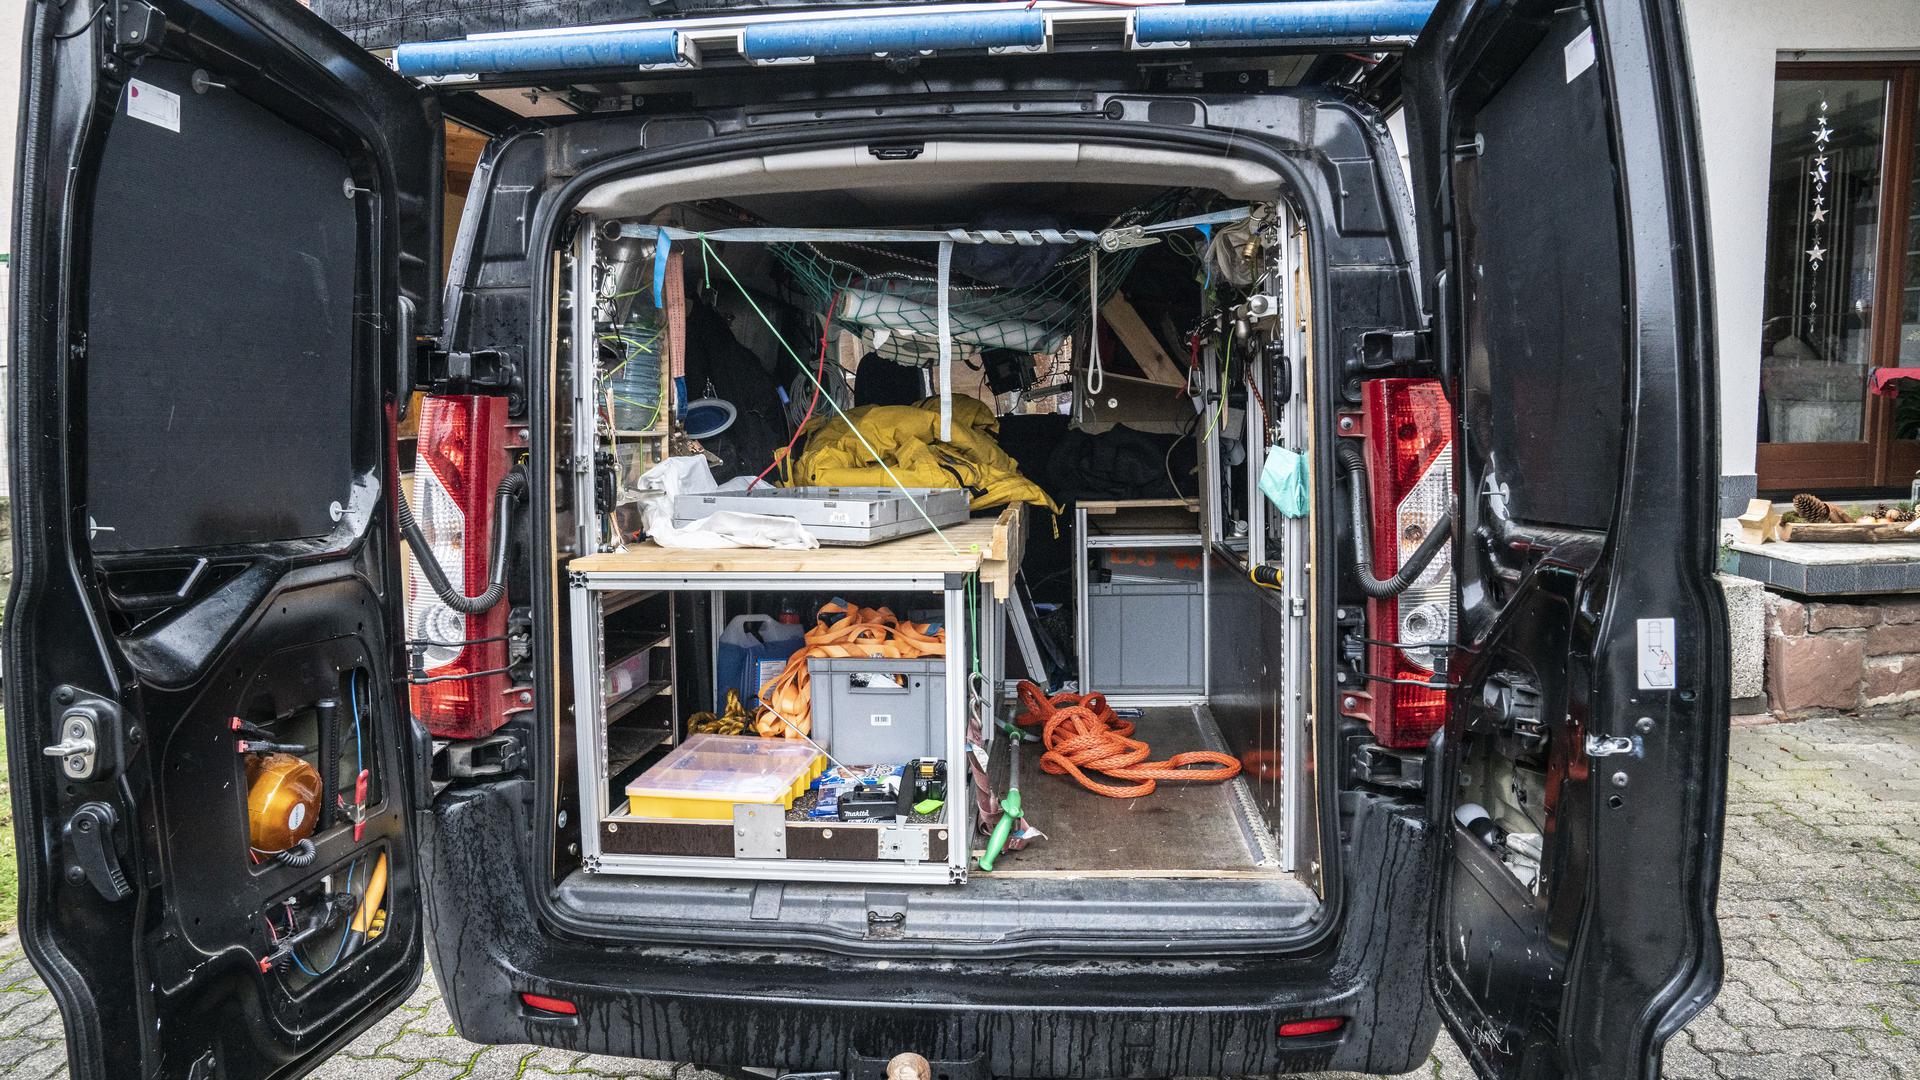 Auto mit geöffneten Hintertüren. Blick ins Innere: Rettungsseile, Werkzeug, Kisten, auf dem Dach ein Dachzelt